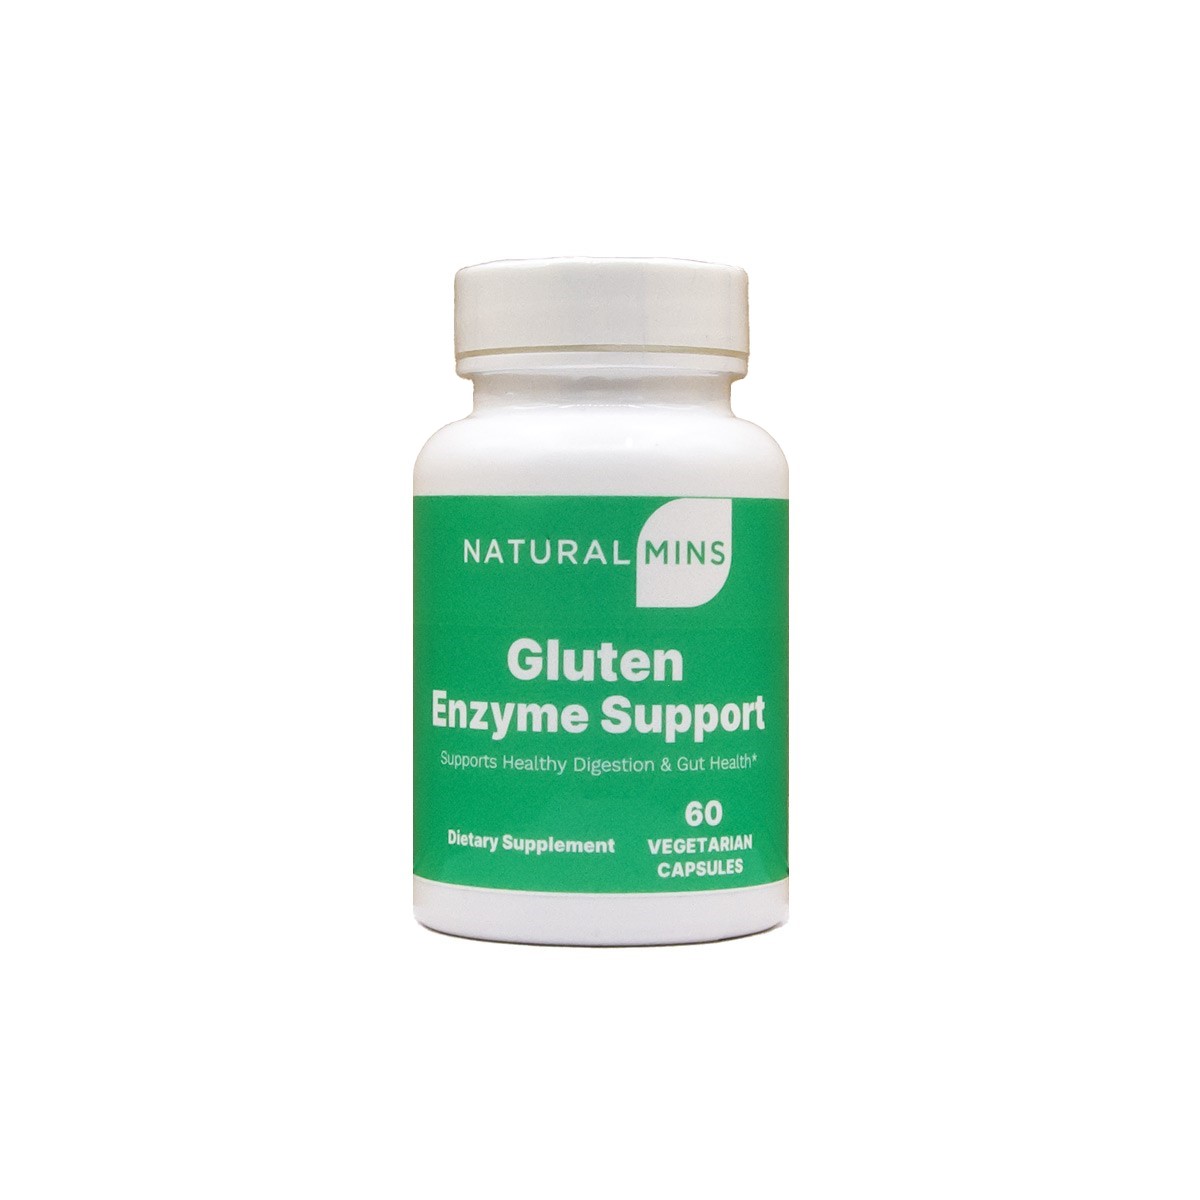 Gluten Enzyme Support